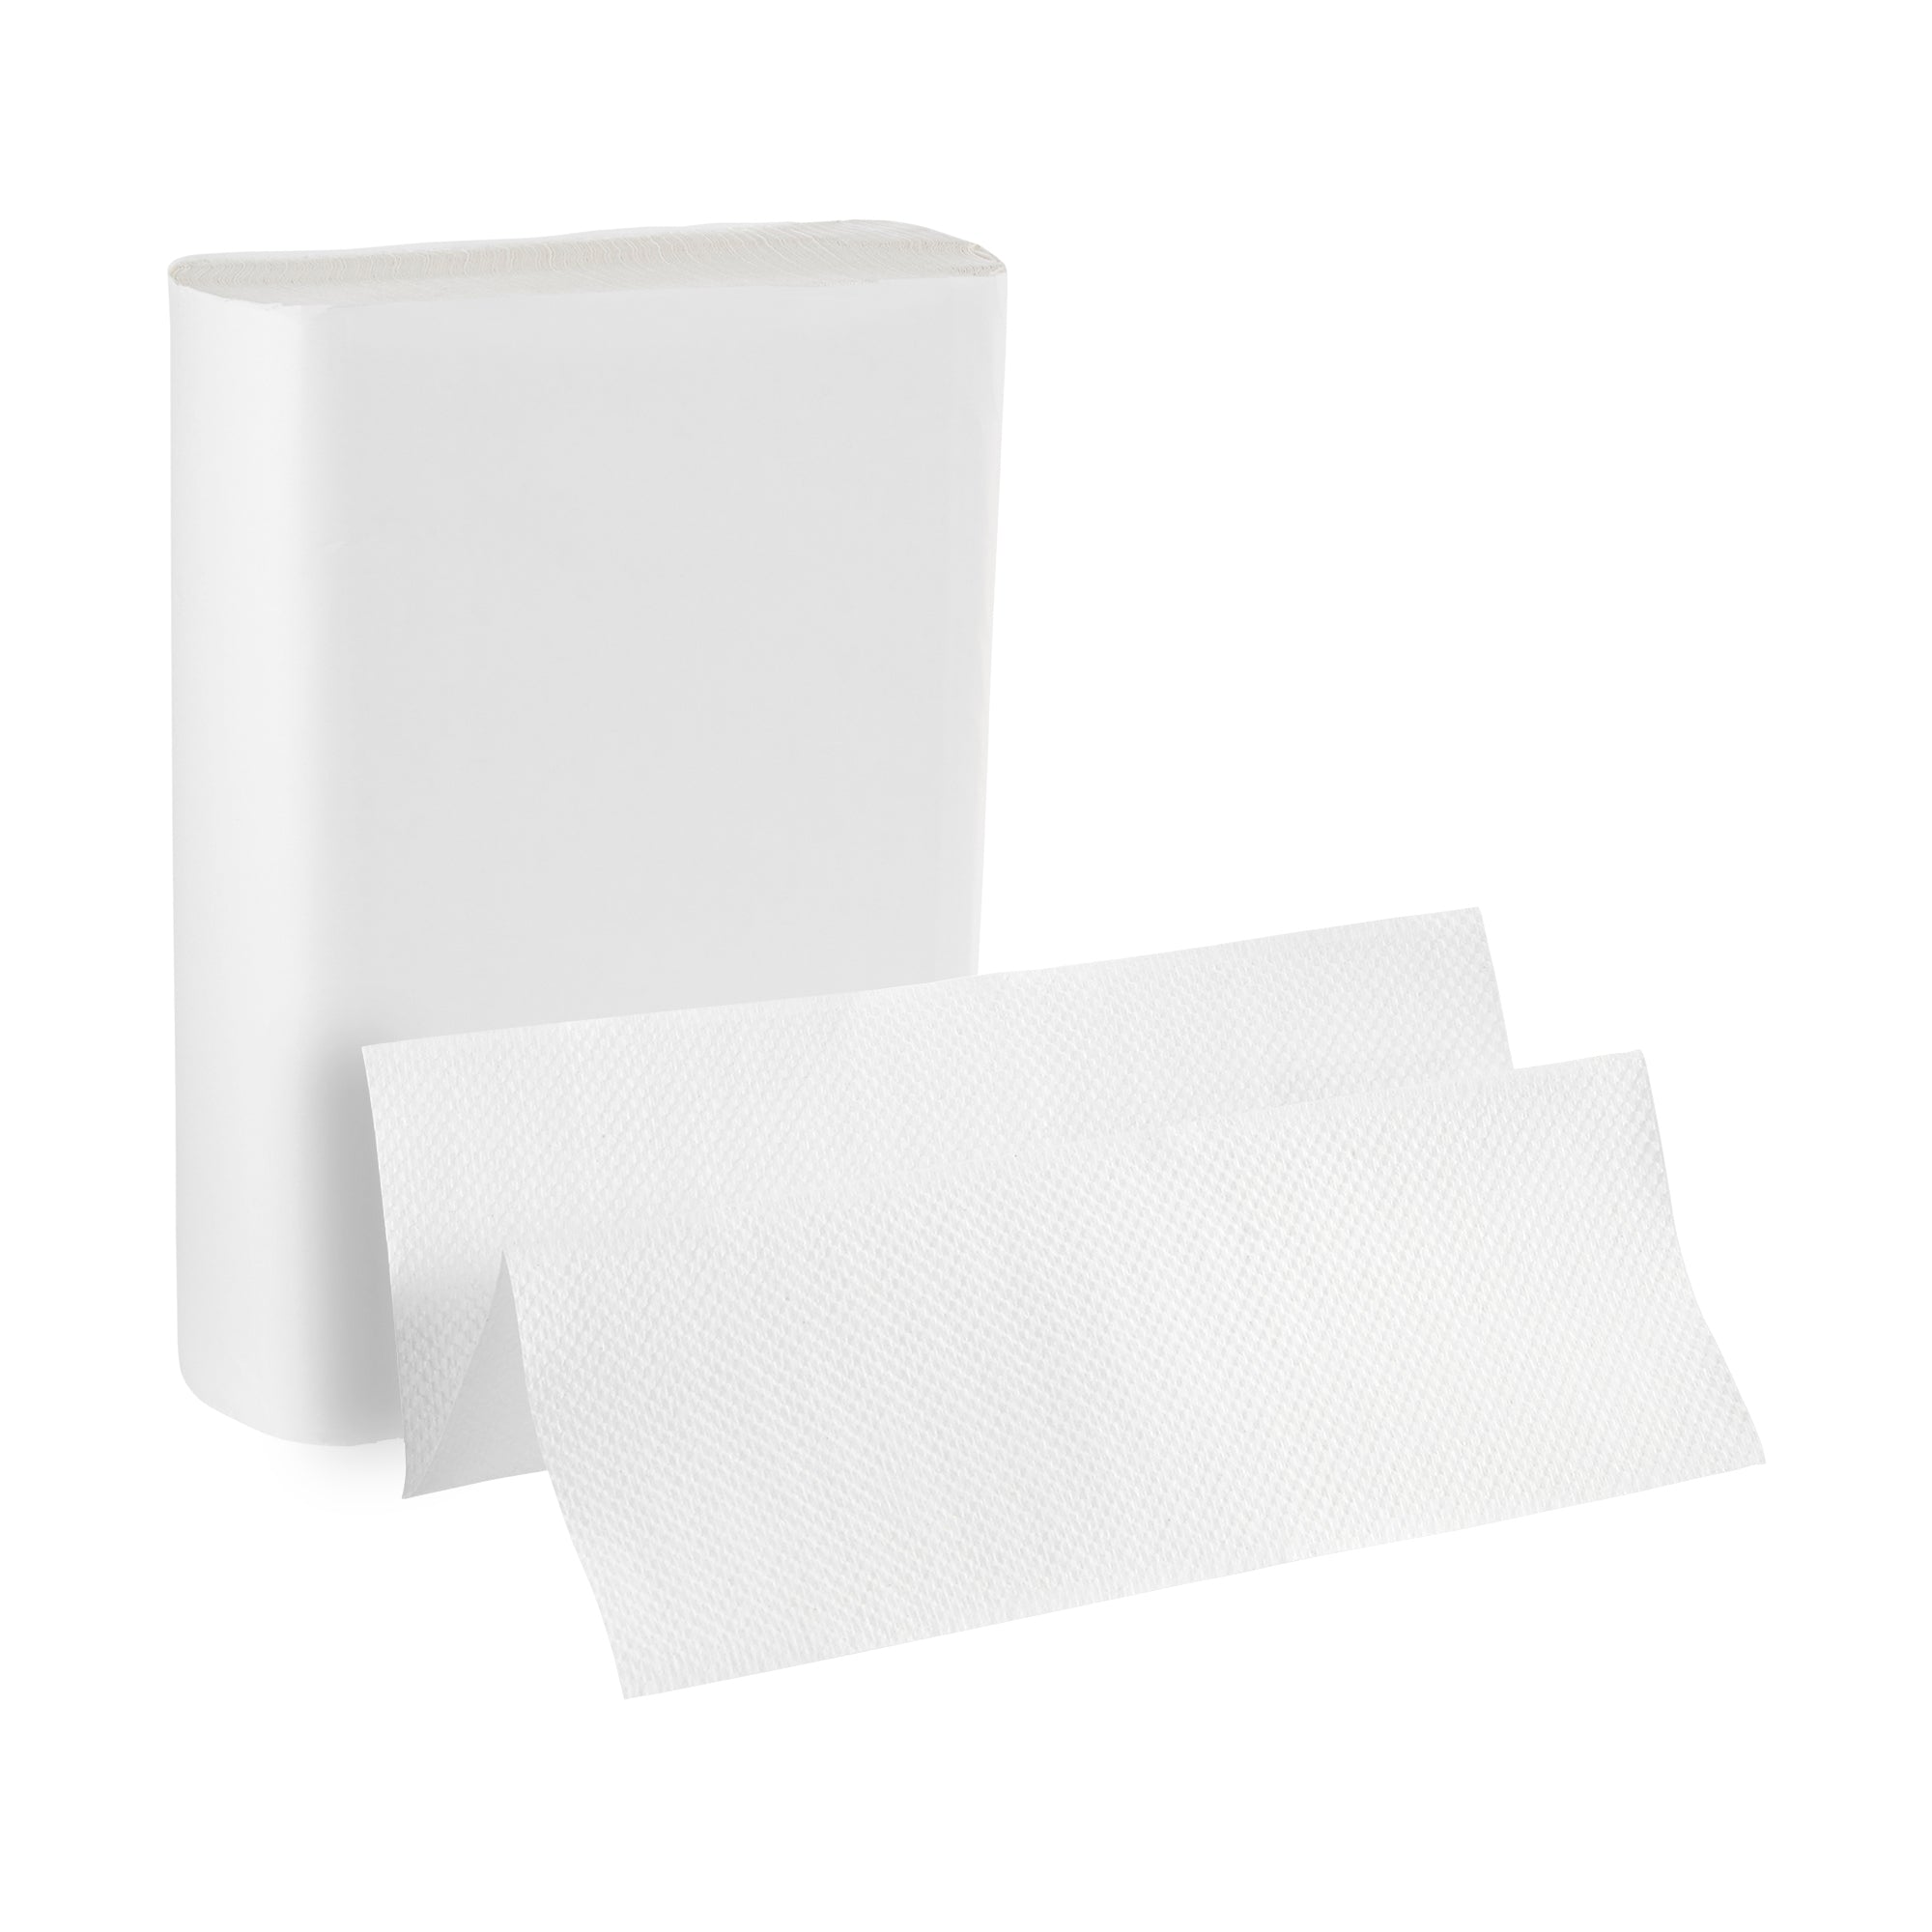 מגבות נייר פרימיום מרובות קפלים מרובות שכבות PACIFIC BLUE BASIC™ מבית GP PRO (ג'ורג'יה פסיפיק), לבן, 2,000 מגבות/מארז